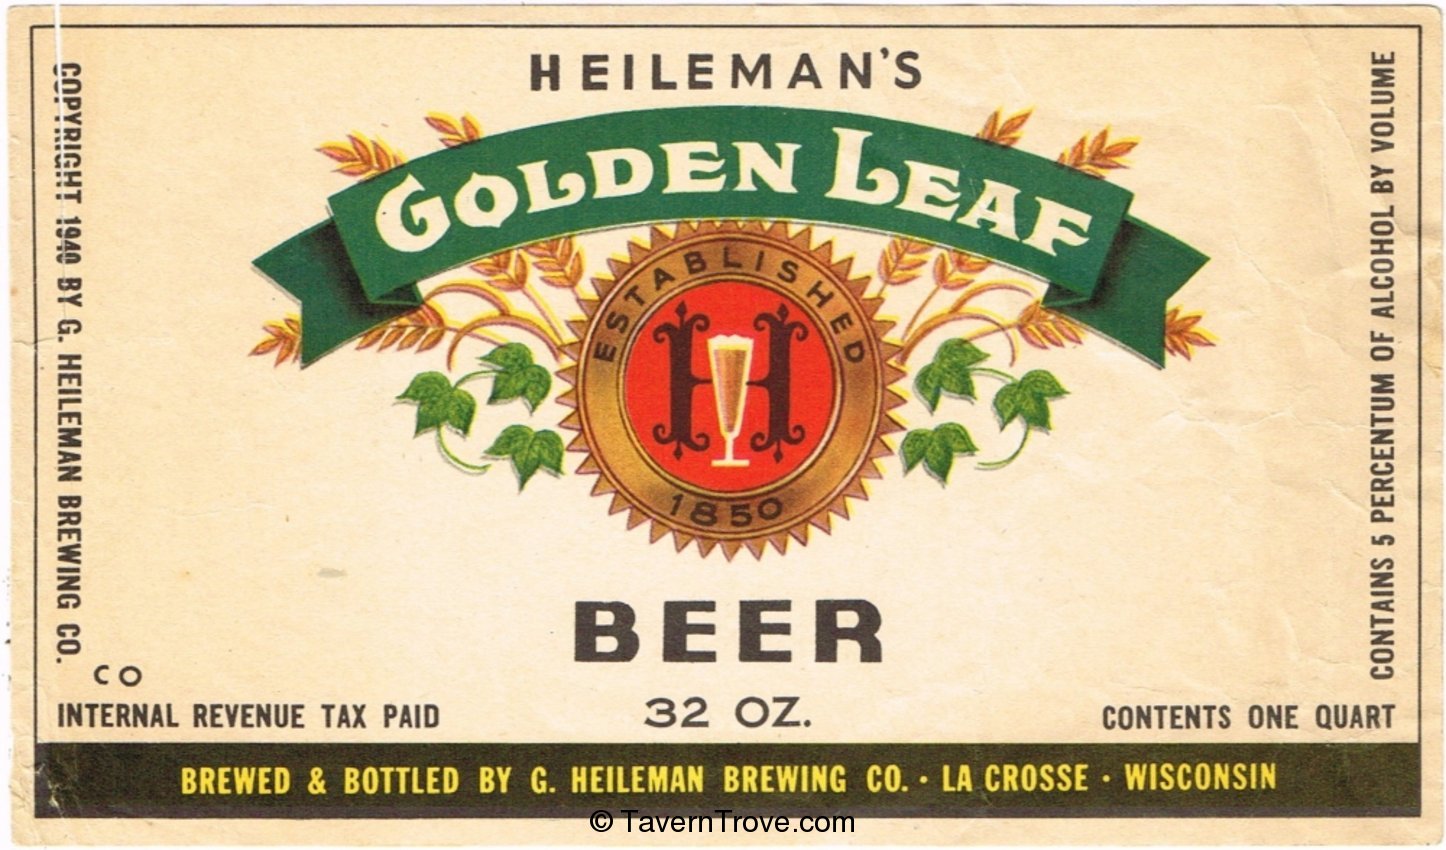 Heileman's Golden Leaf Beer